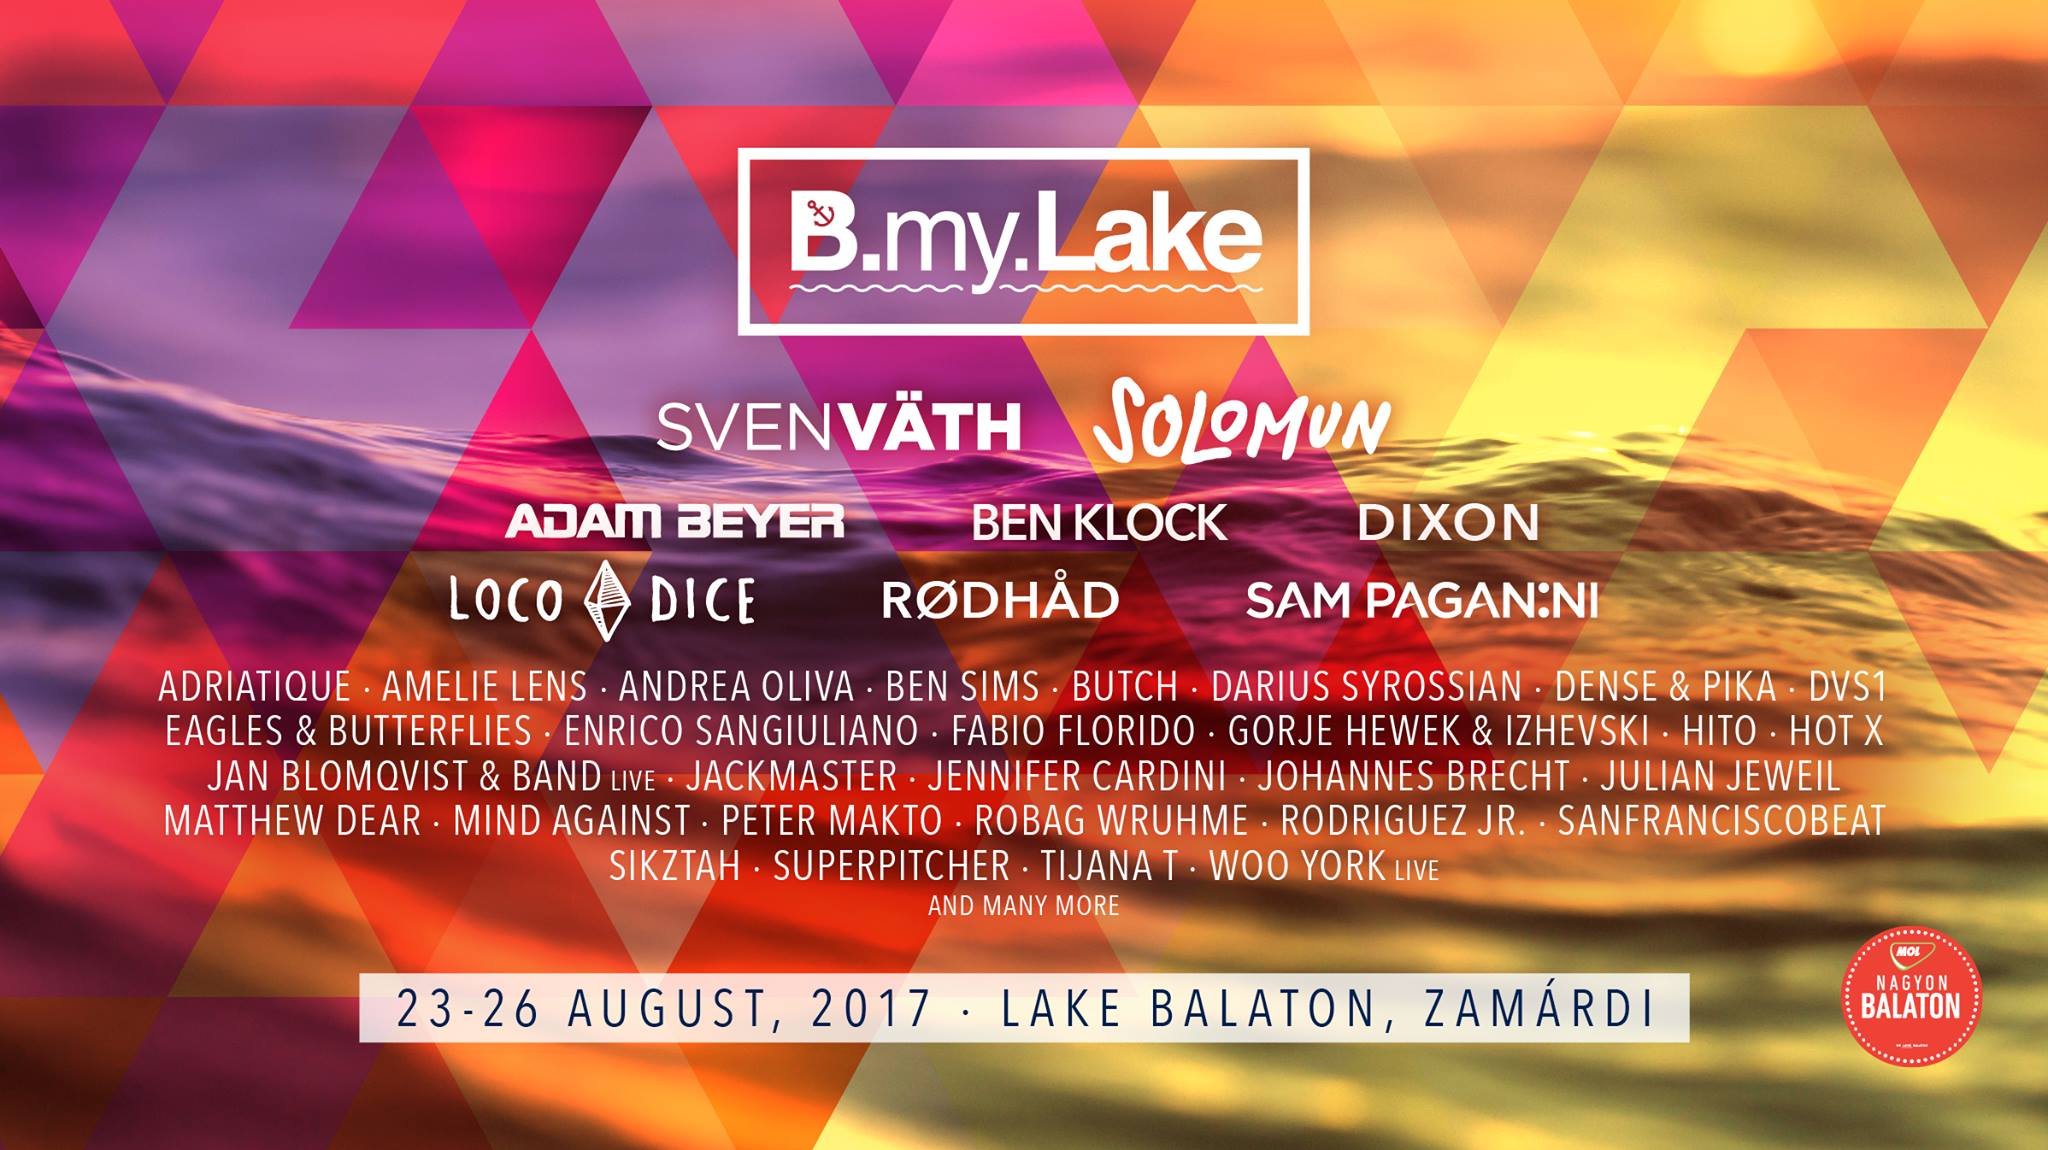 B.my.Lake 2017 at Lake Balaton (Zamárdi) on 23 Aug 2017 | Last.fm